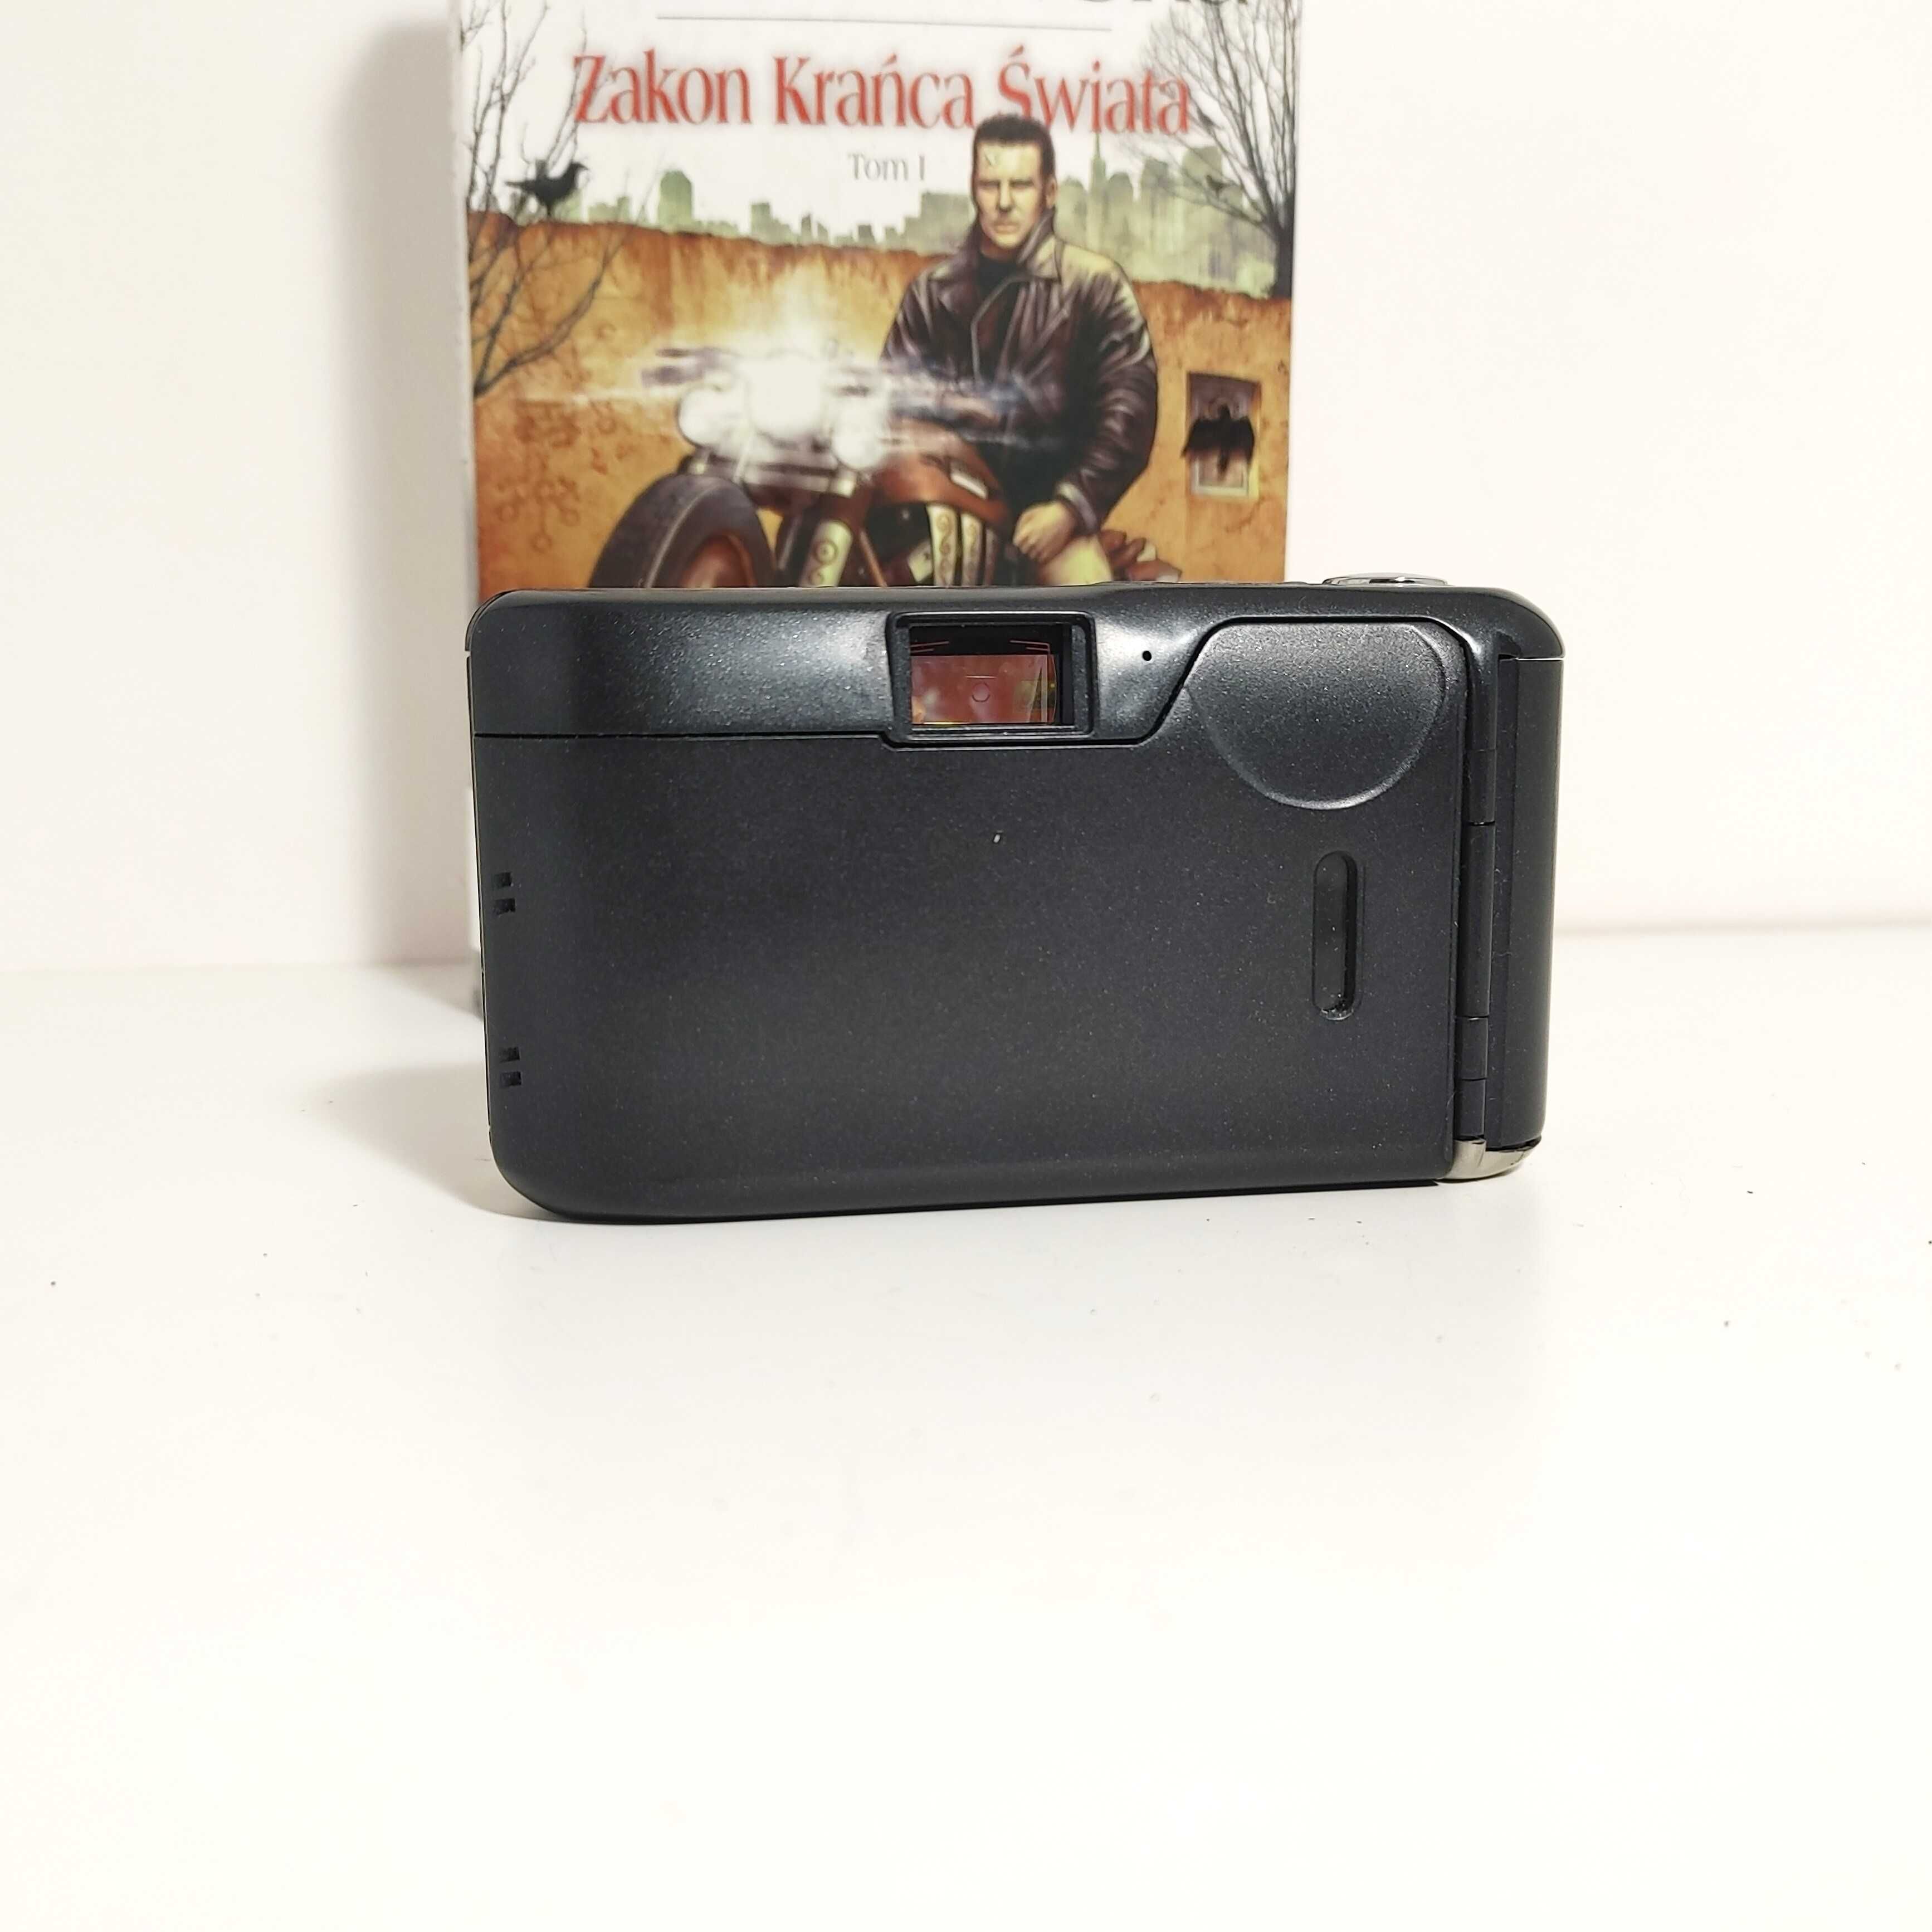 Kompaktowy analogowy aparat fotograficzny PRAKTICA CM 1000  Ładny stan